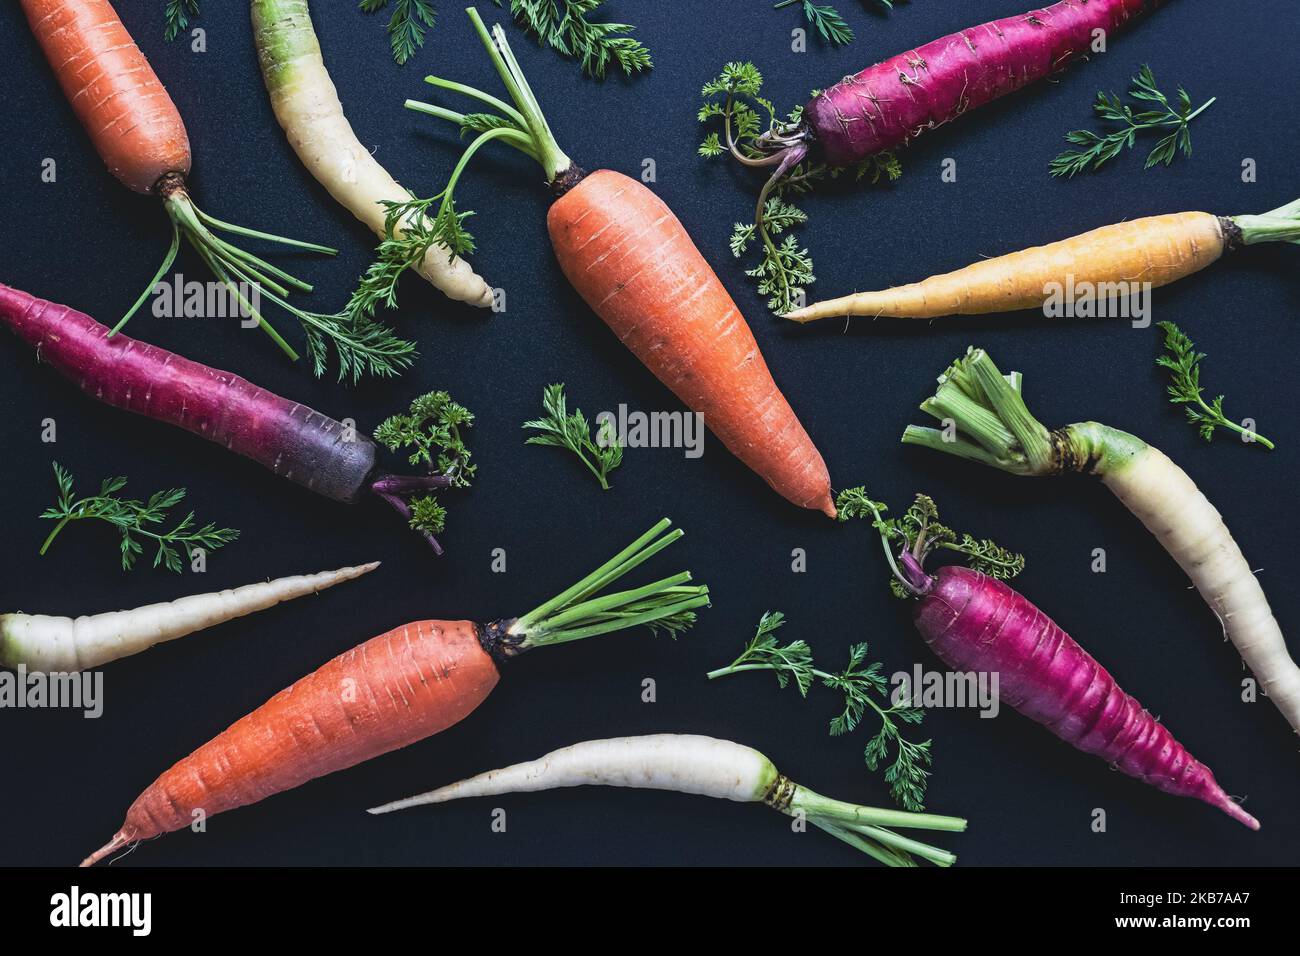 Motivo di carote colorate su sfondo nero, giacitura piatta di carote arcobaleno, vista dall'alto Foto Stock